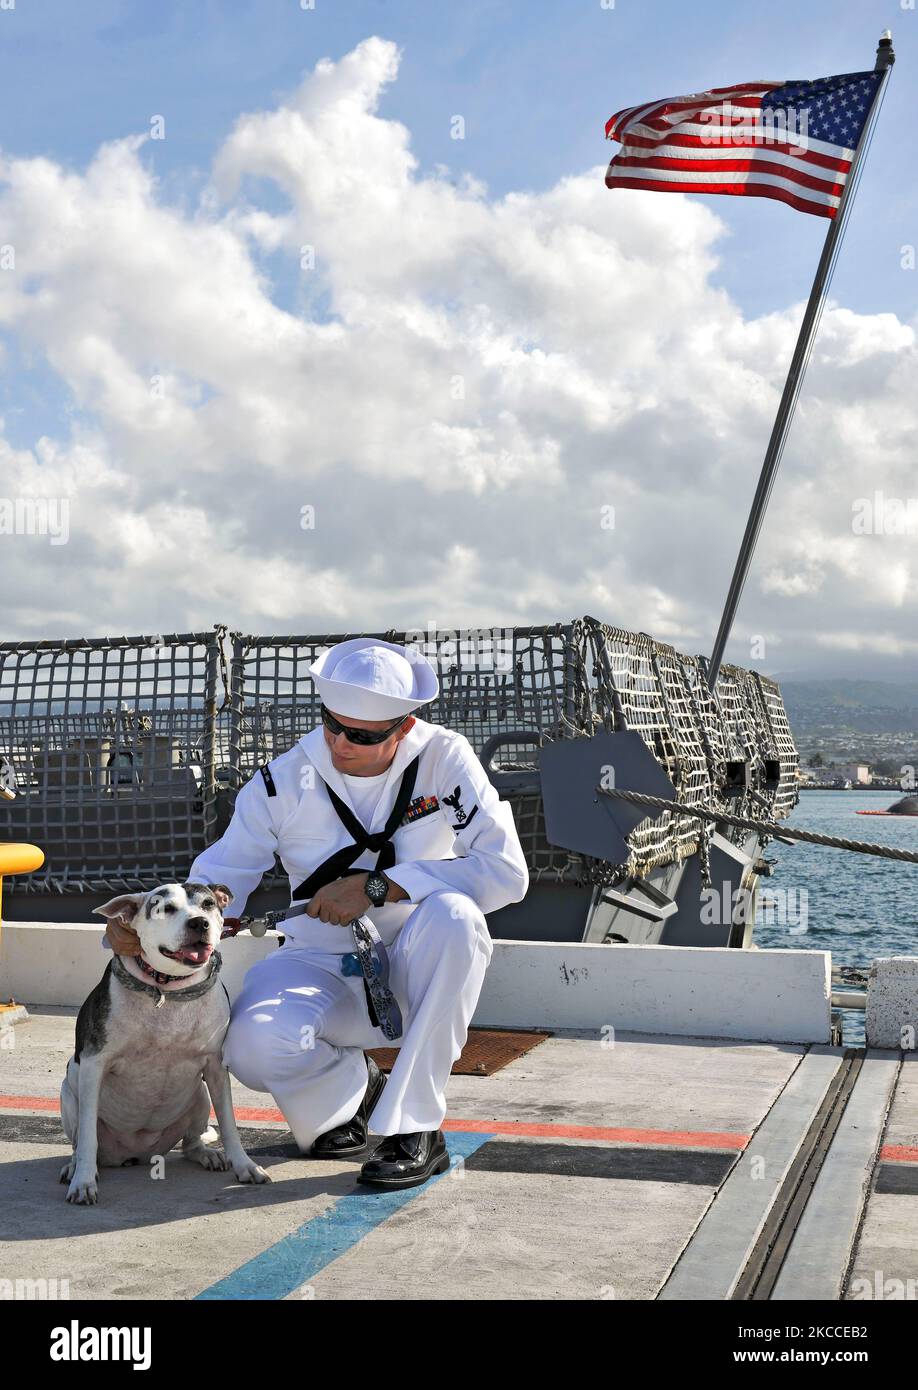 Der Seemann der US-Marine sagt vor dem Abflug des Schiffes Auf Wiedersehen zu seinem Hund. Stockfoto